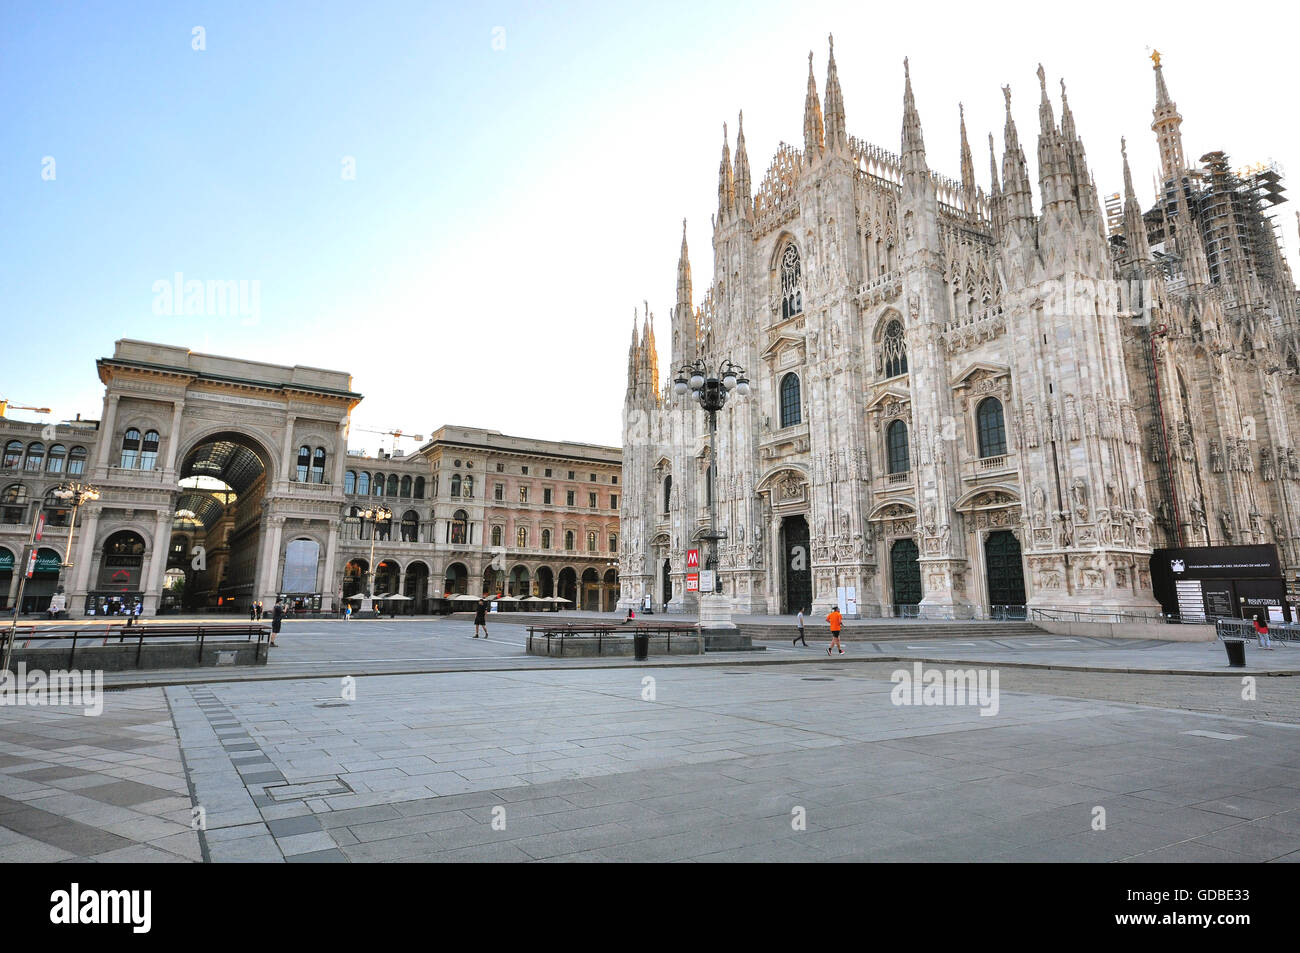 Milano, Italia - 20 giugno: Vista di piazza del Duomo a Milano il 20 giugno 2015. Foto Stock